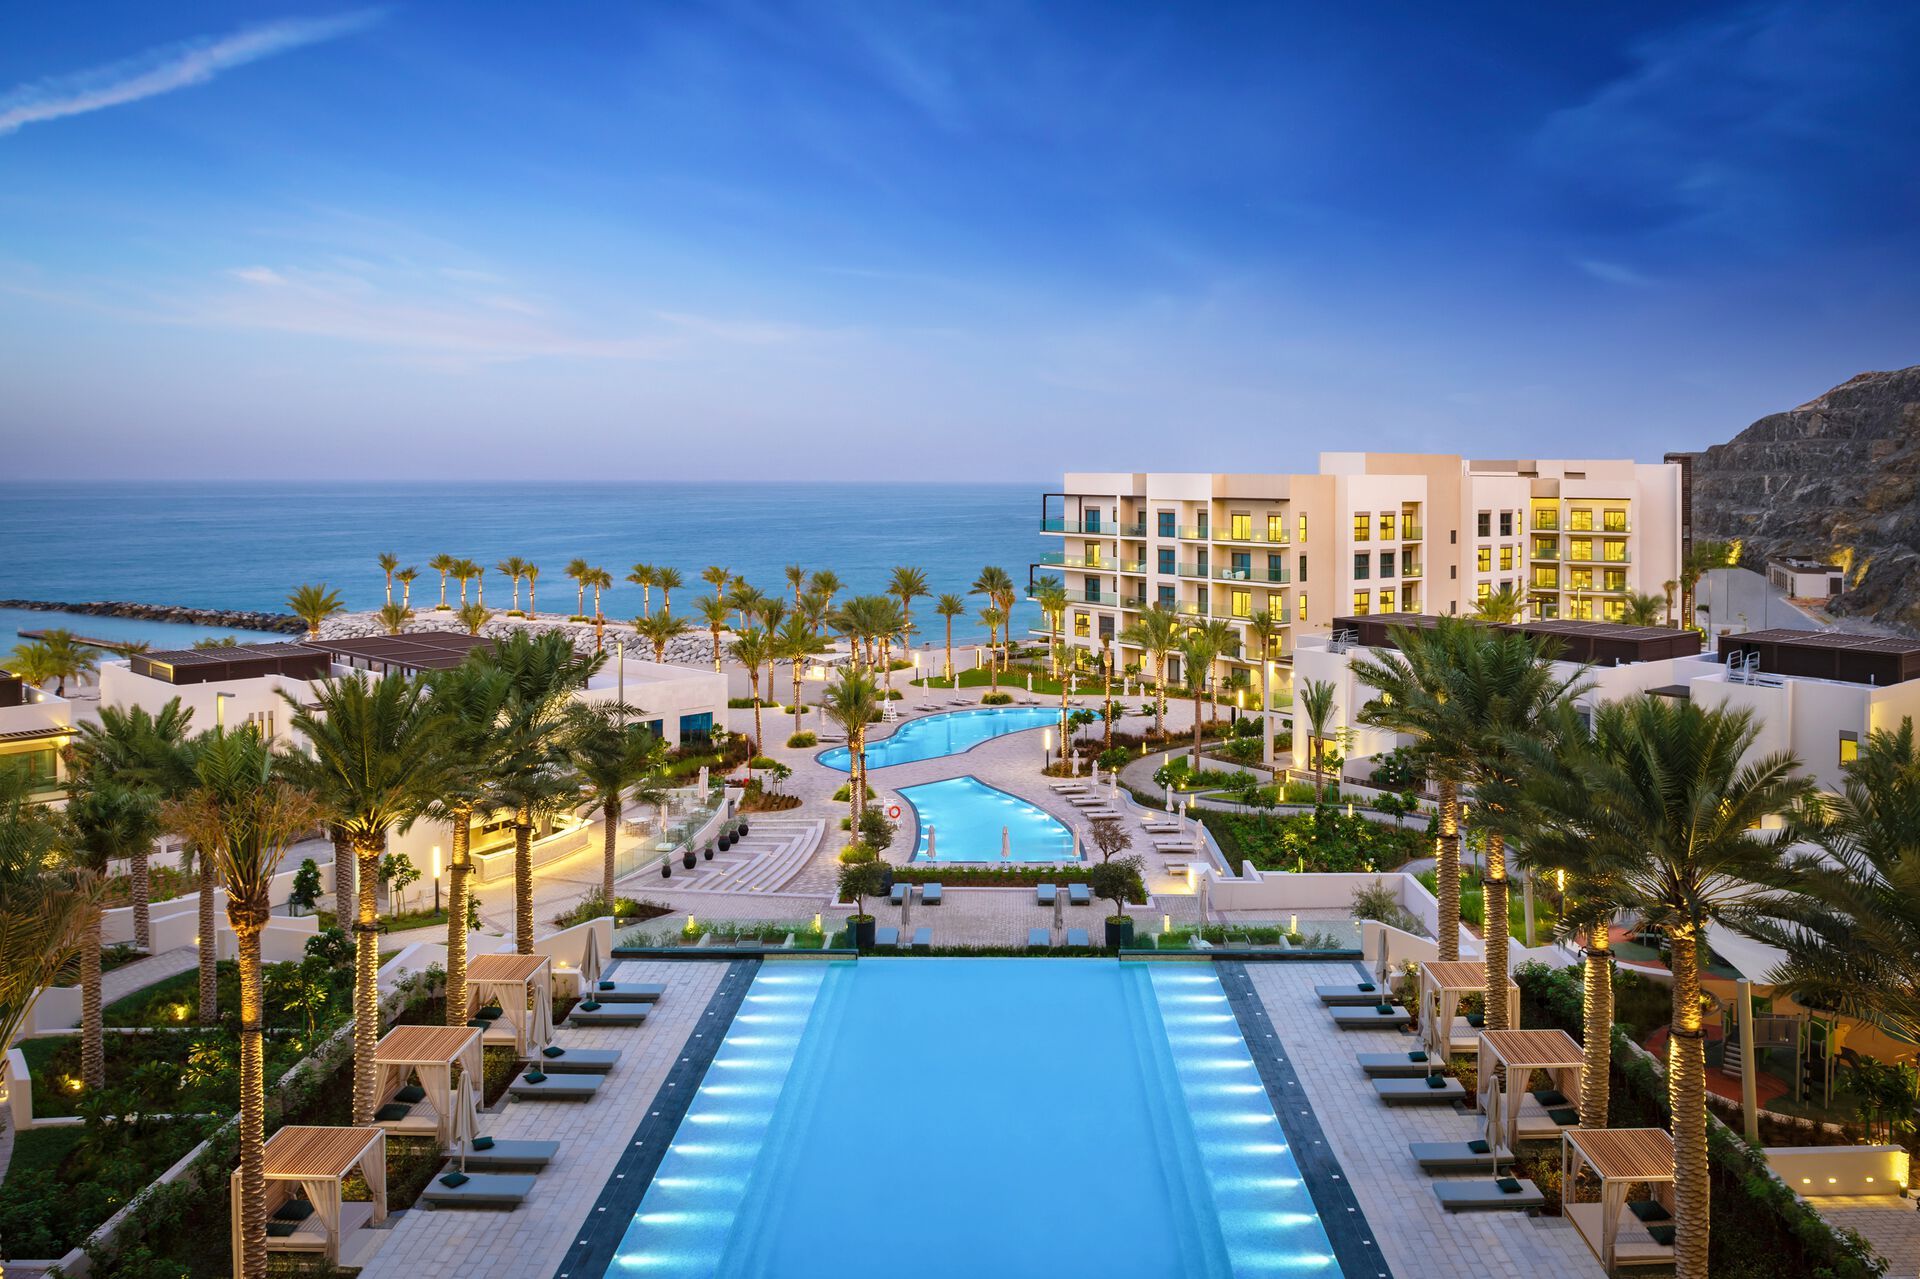 Voco Dubai & Address Beach Resort Fujairah